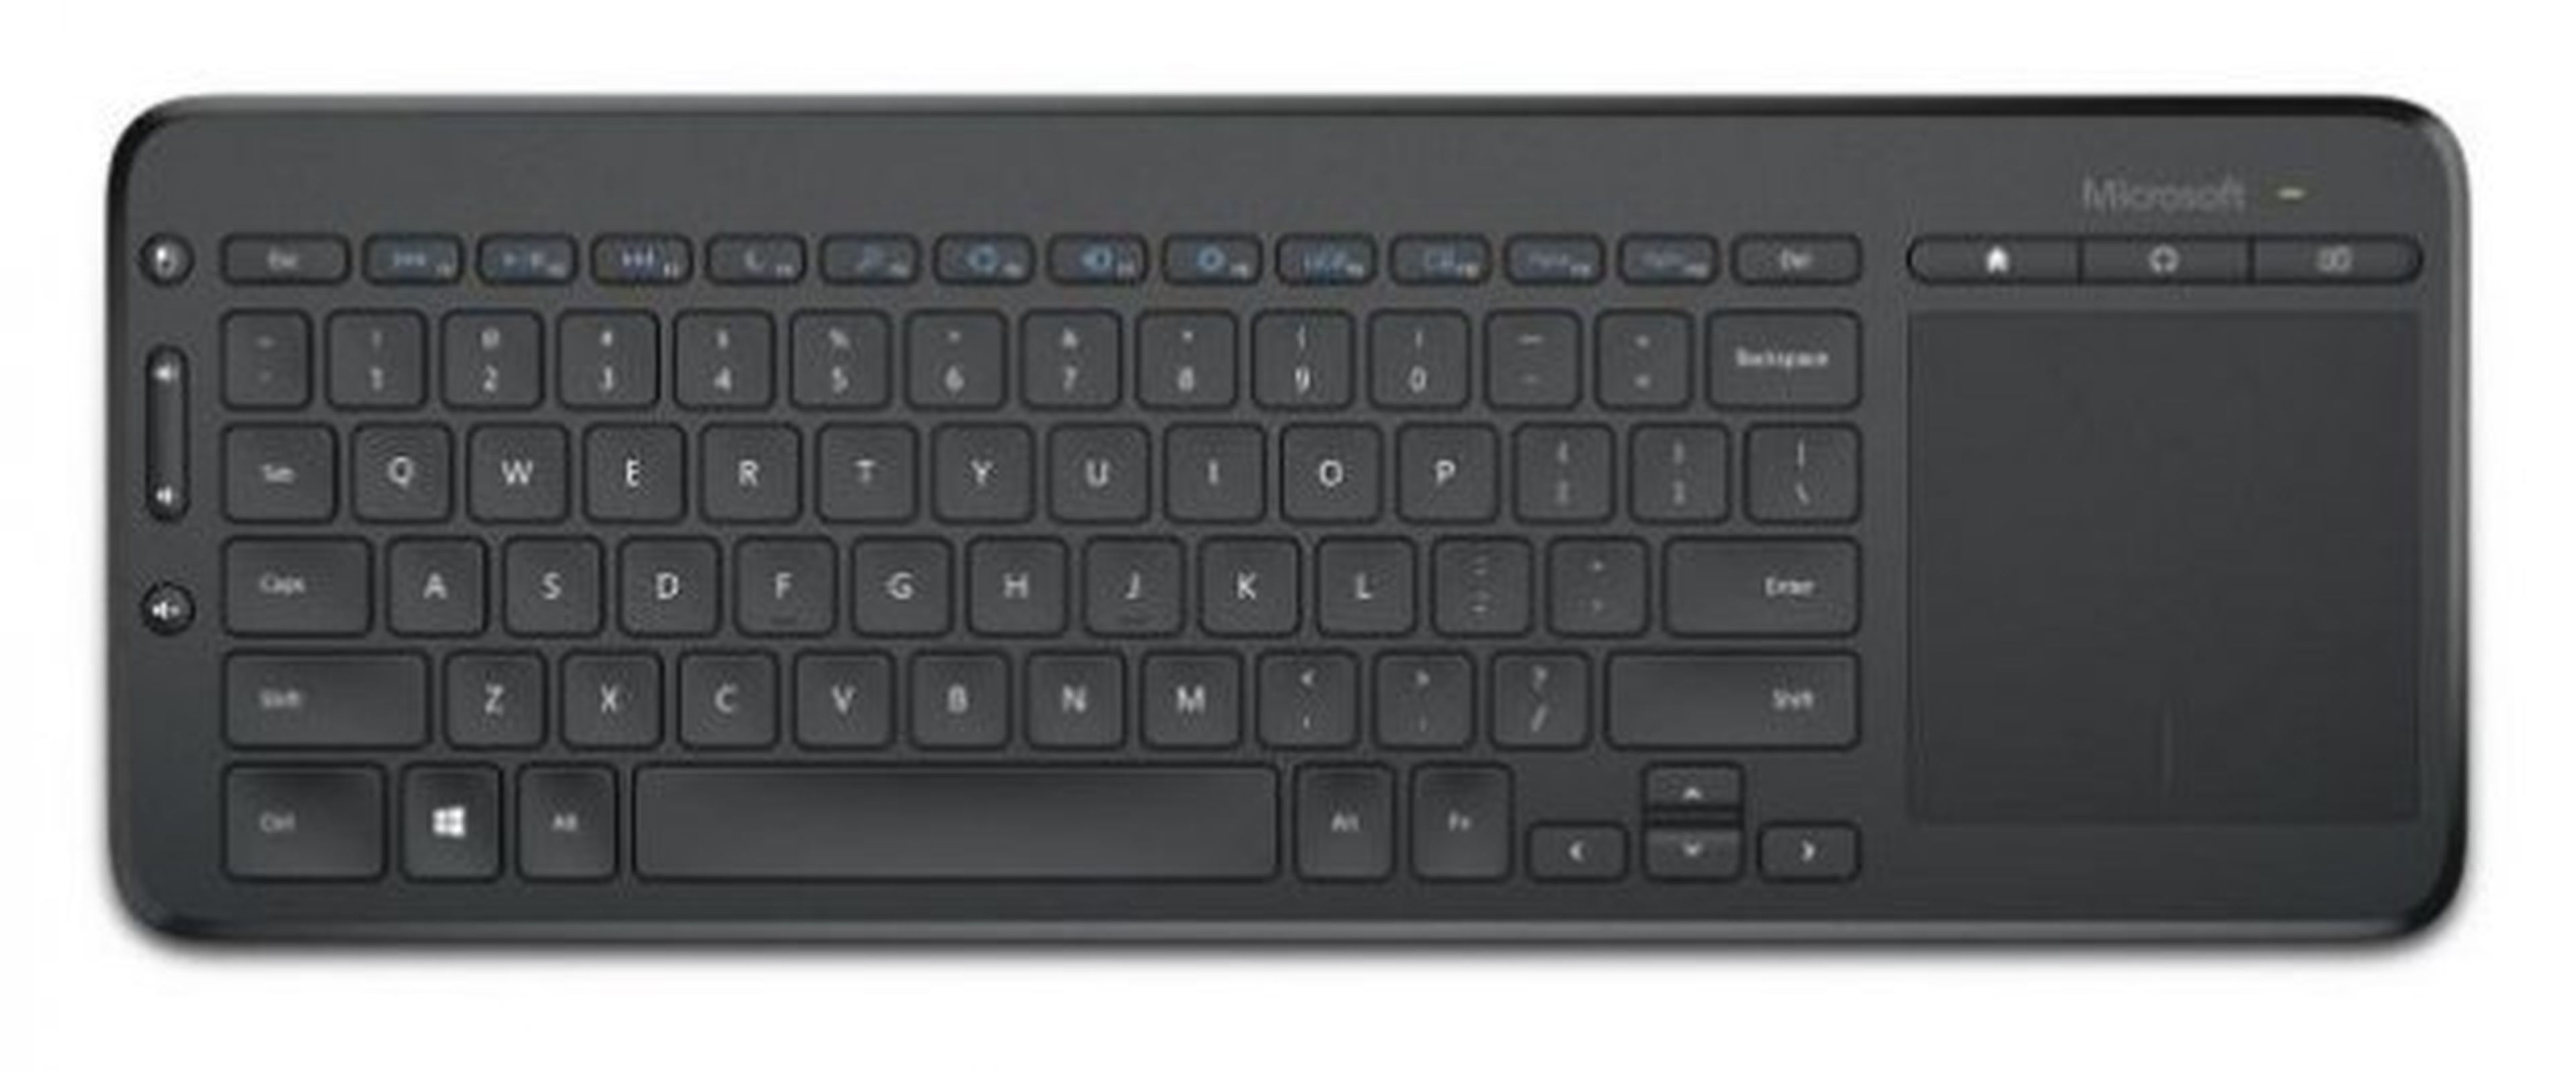 Nuevo teclado wireless de Microsoft para Smart TV y tablets